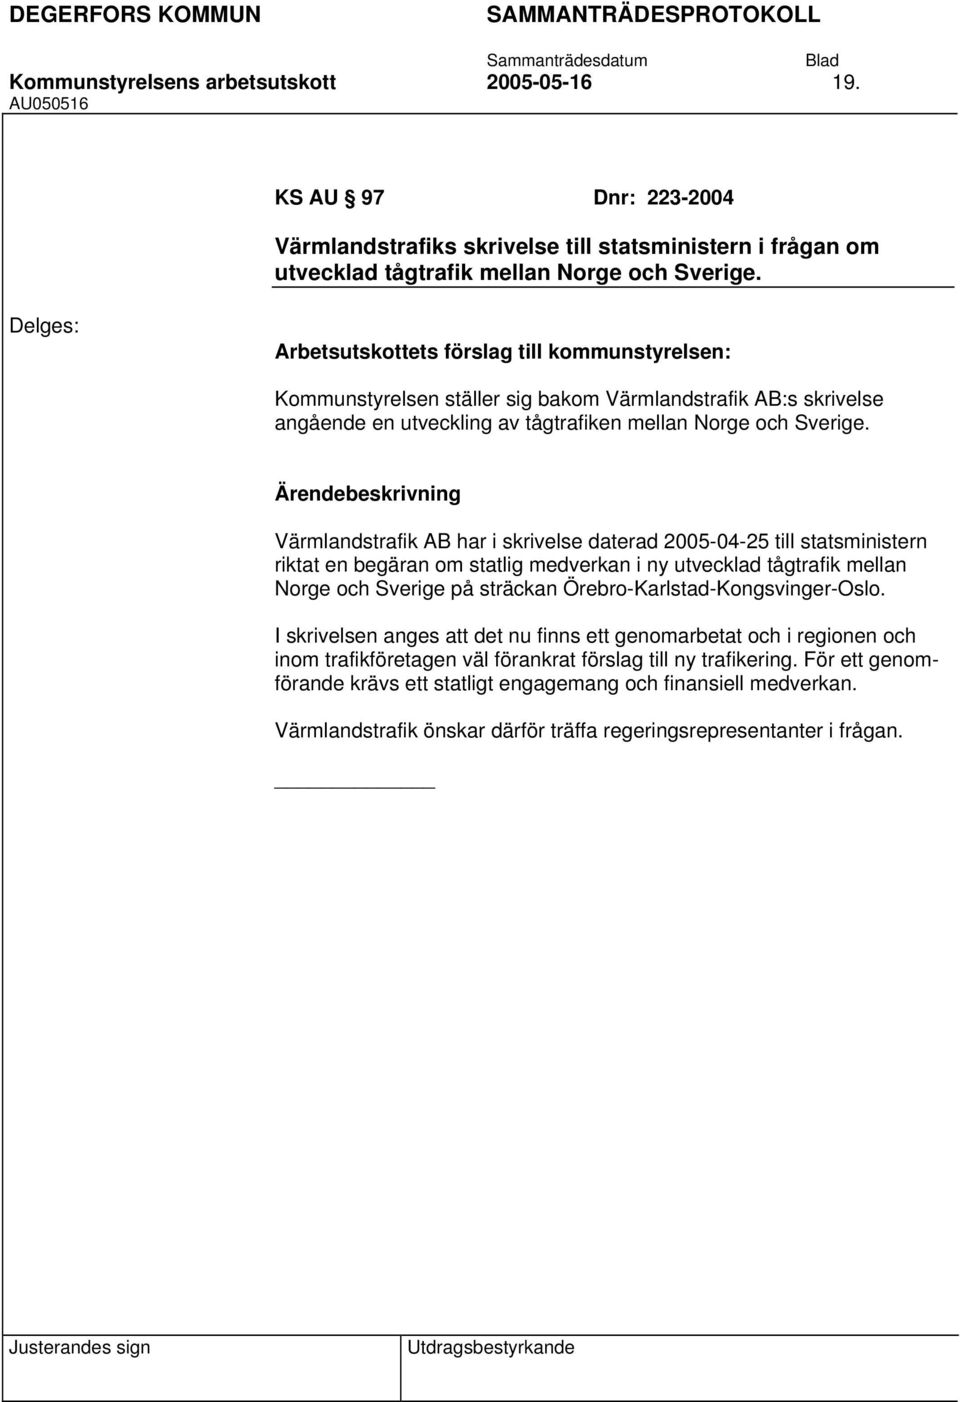 Värmlandstrafik AB har i skrivelse daterad 2005-04-25 till statsministern riktat en begäran om statlig medverkan i ny utvecklad tågtrafik mellan Norge och Sverige på sträckan